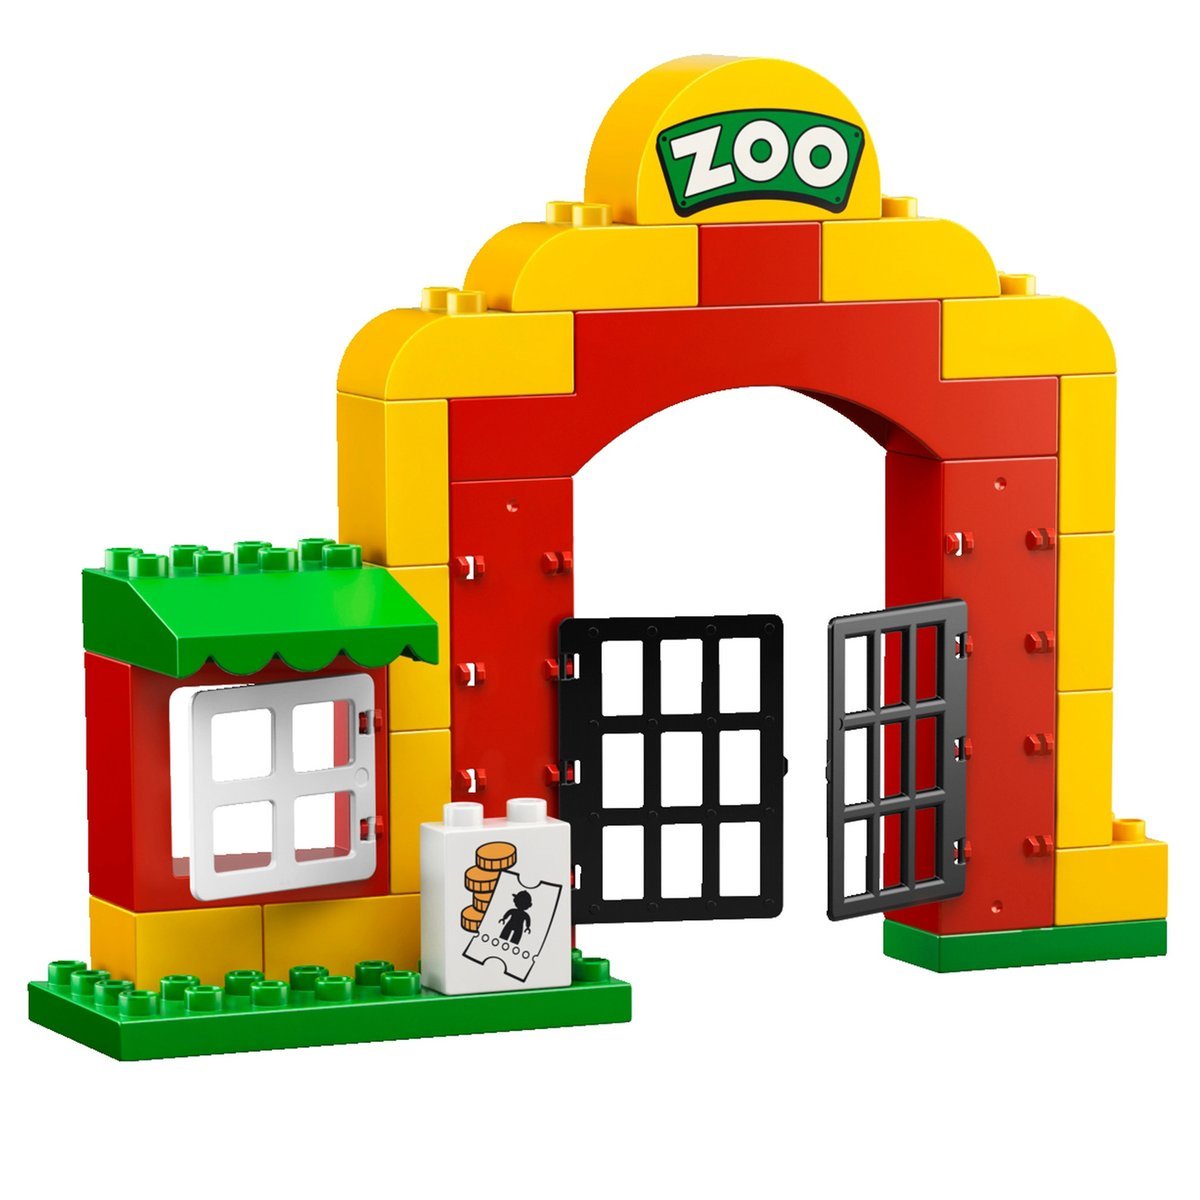 LEGO DUPLO 6157 Large City Zoo